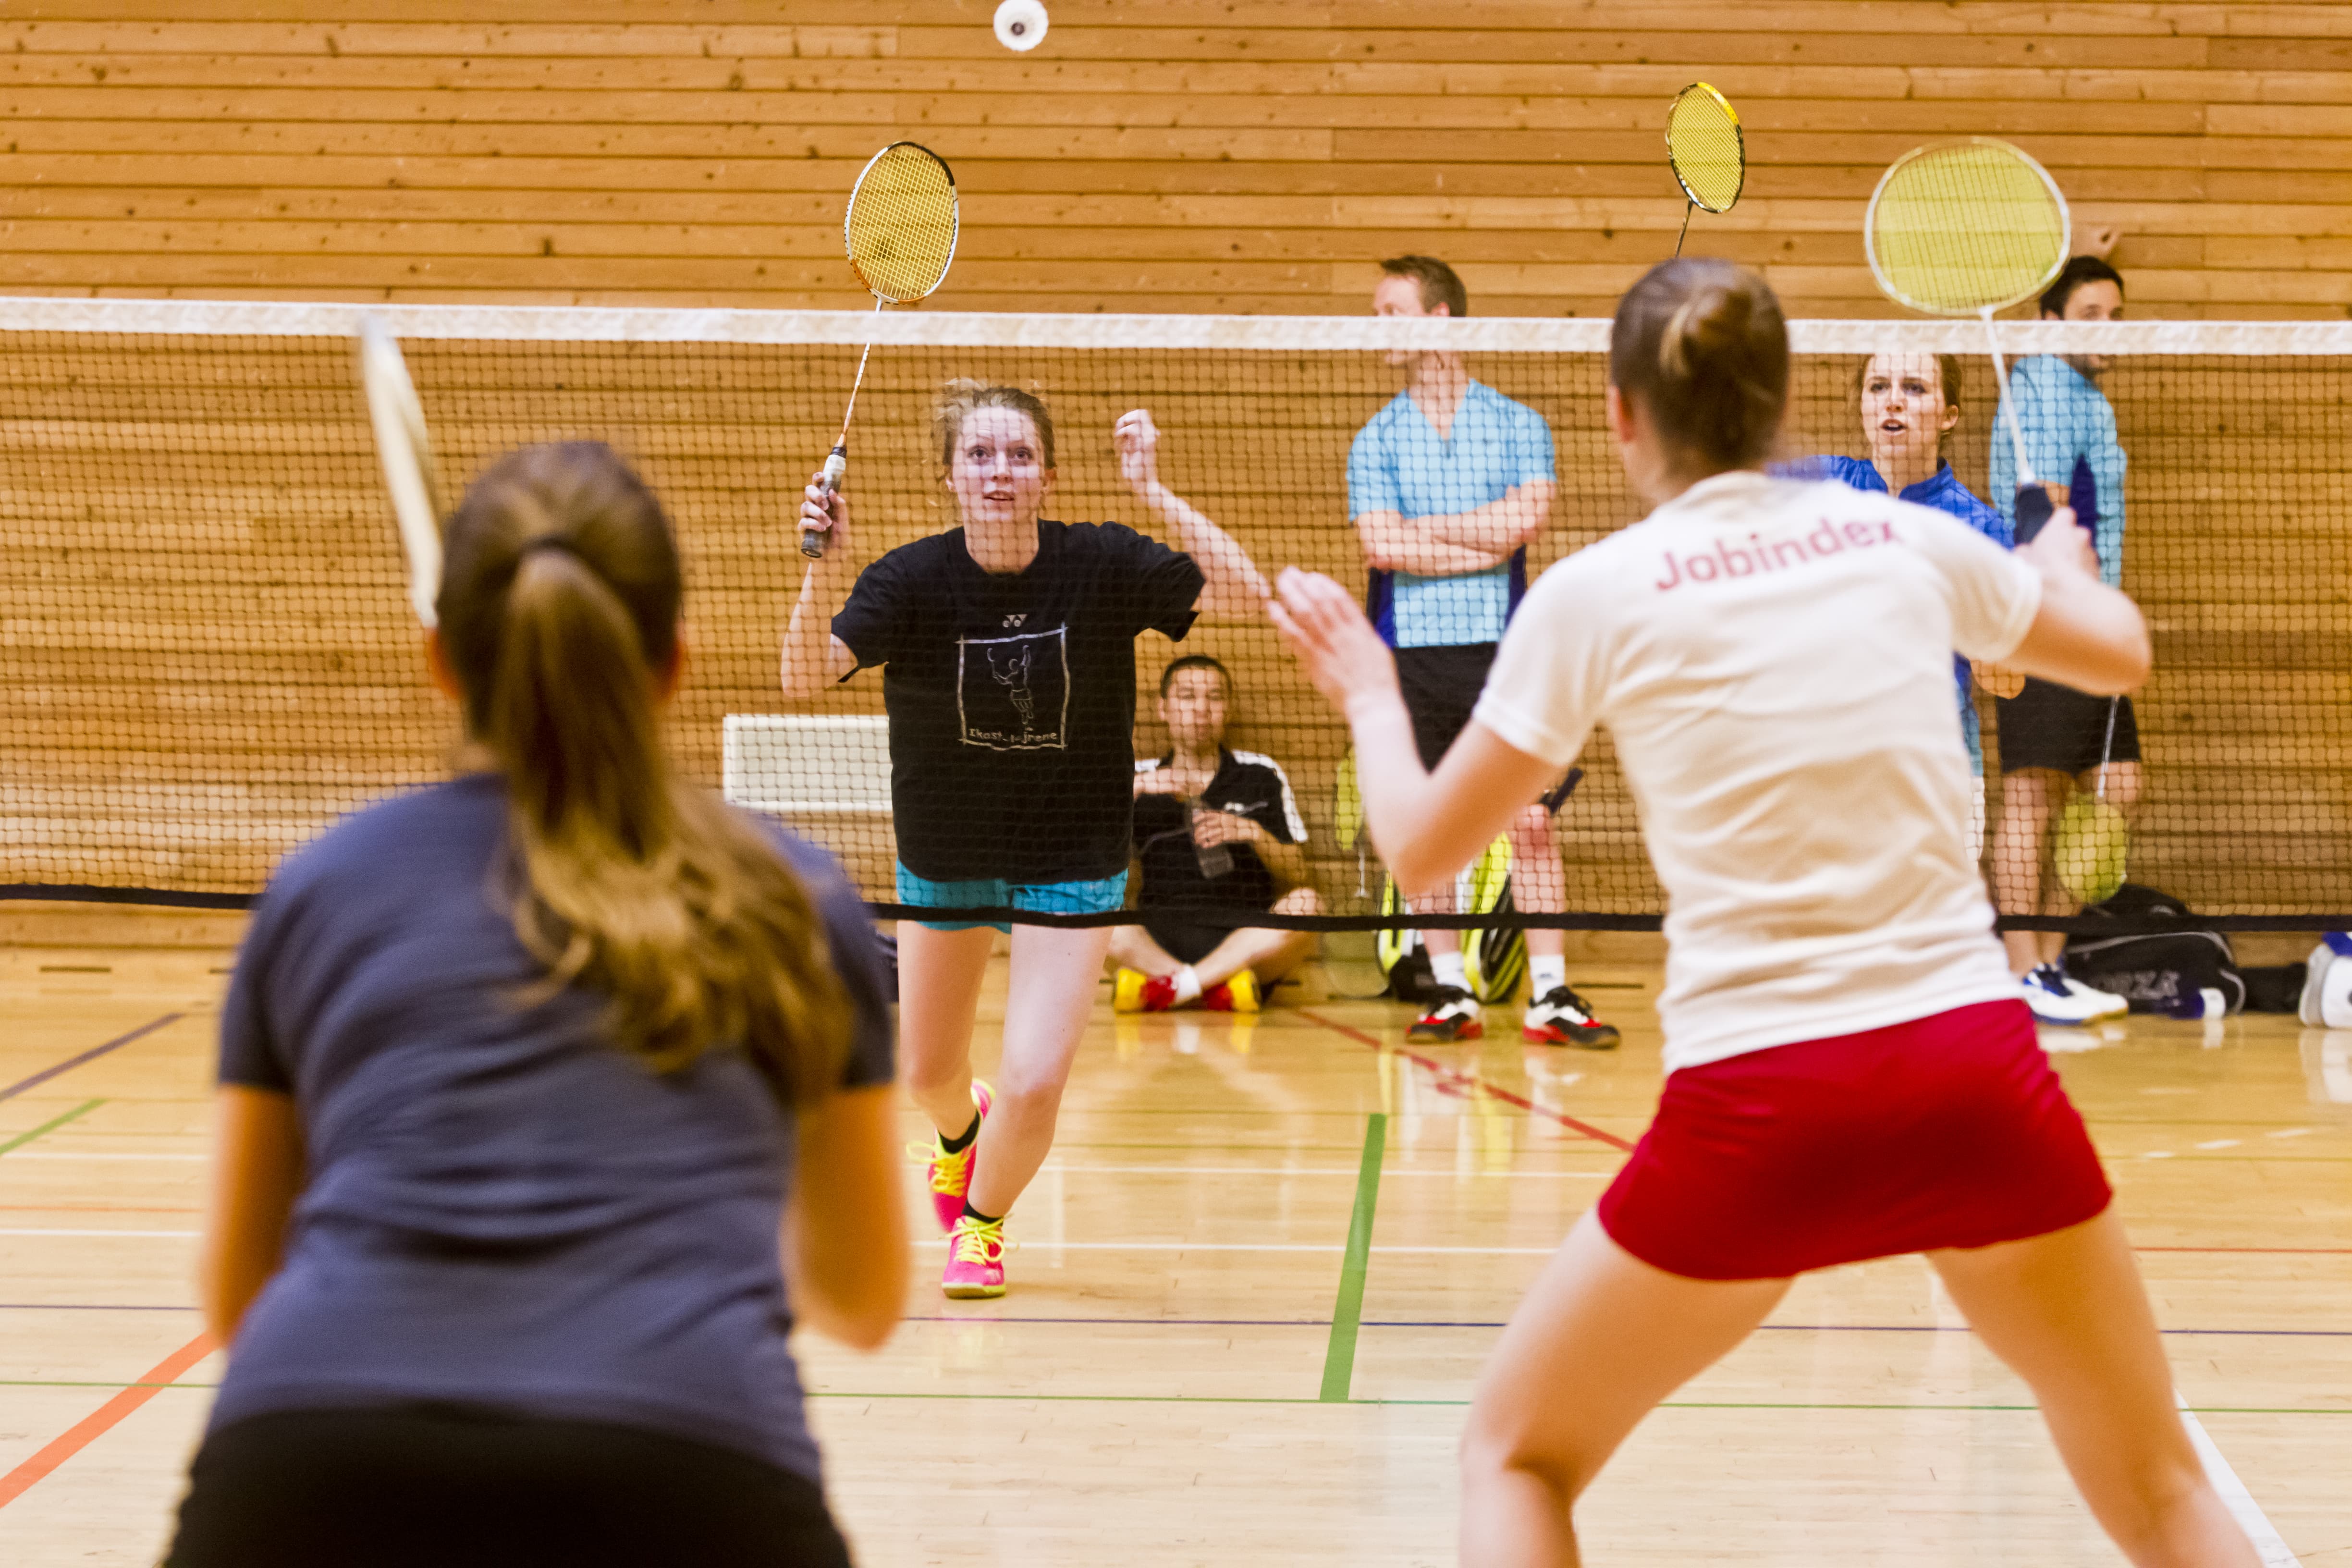 badminton copenhagen københavn badmintontræner træner badminton coach apply open positions